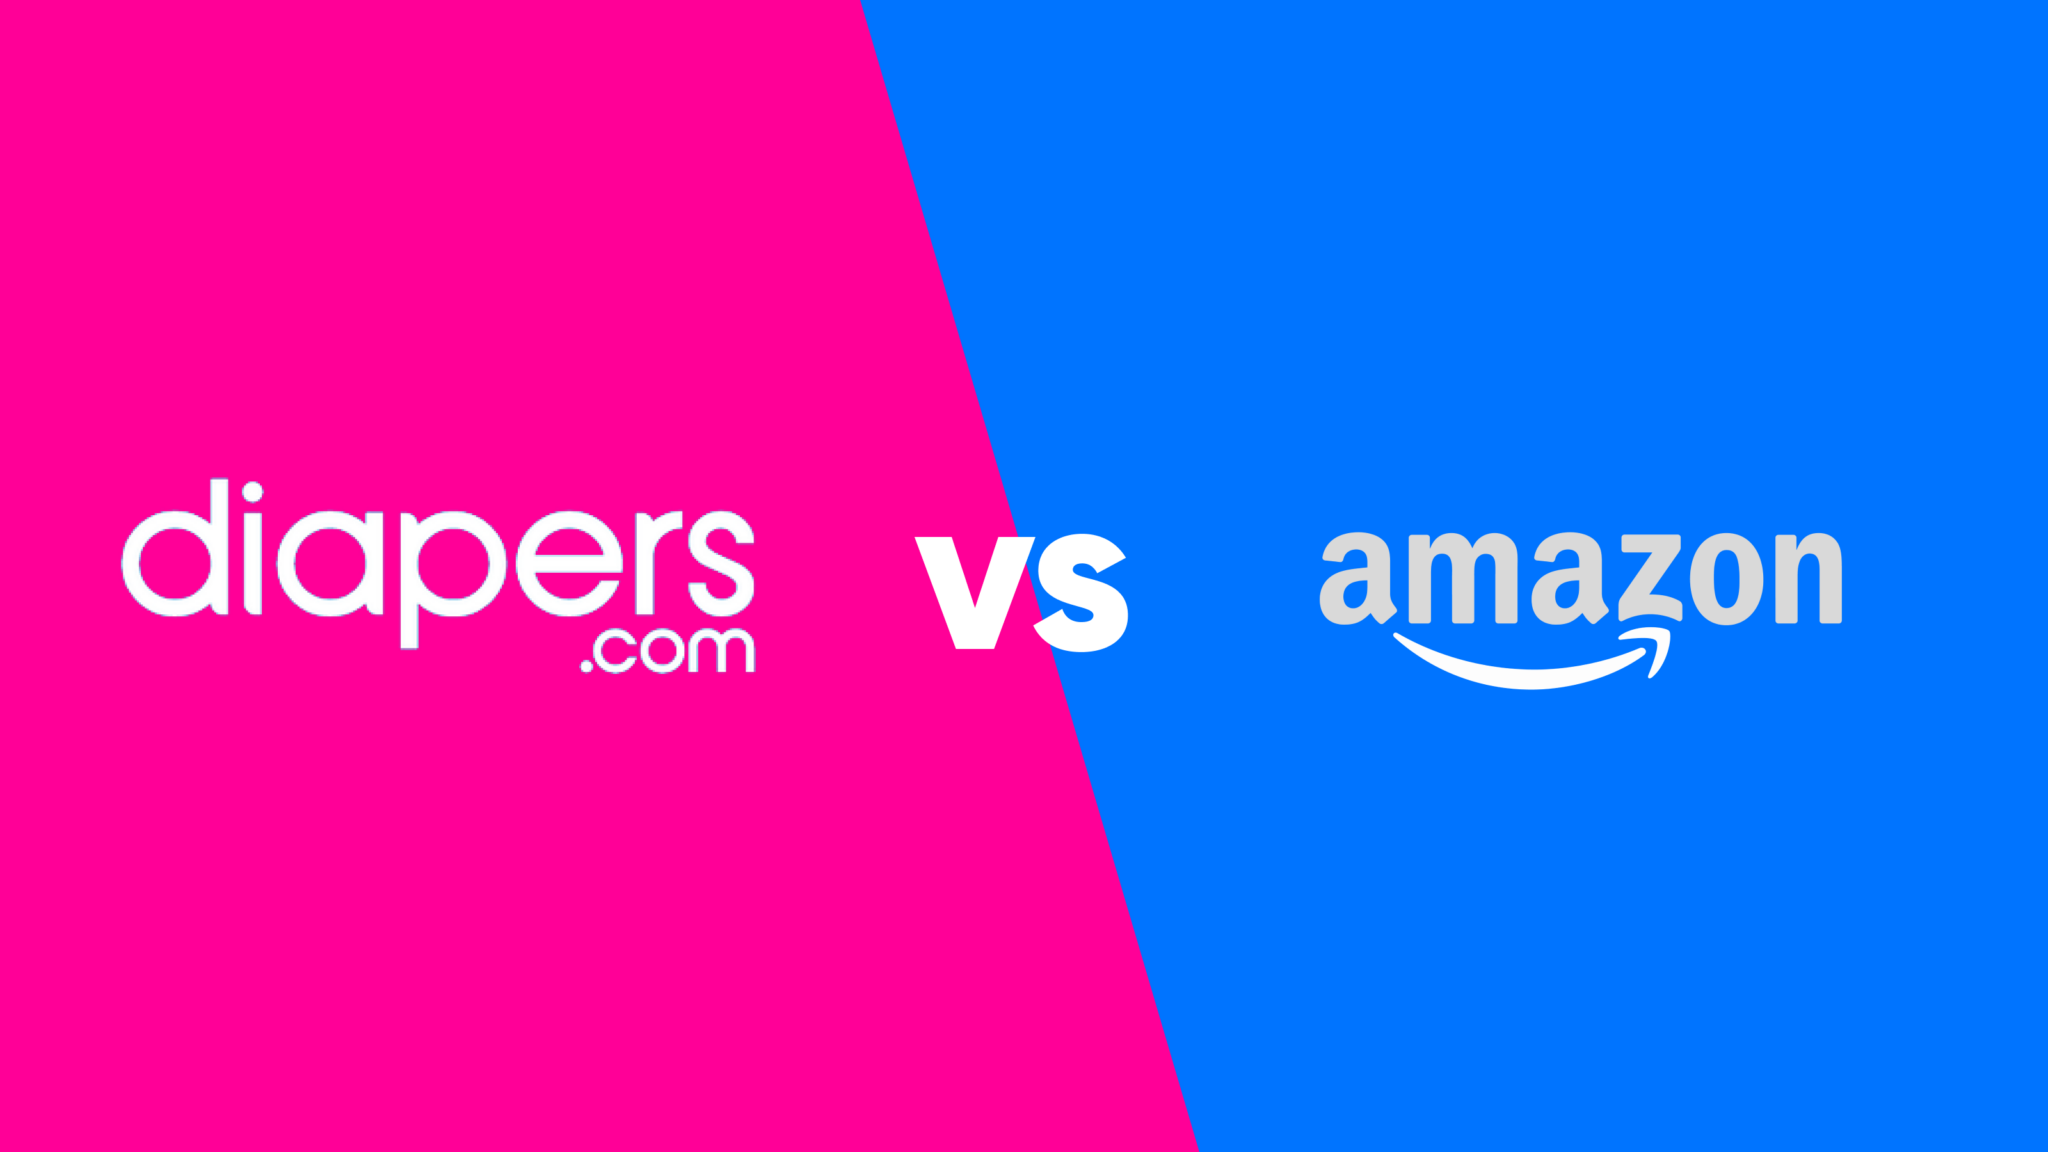 Diapers.com vs Amazon